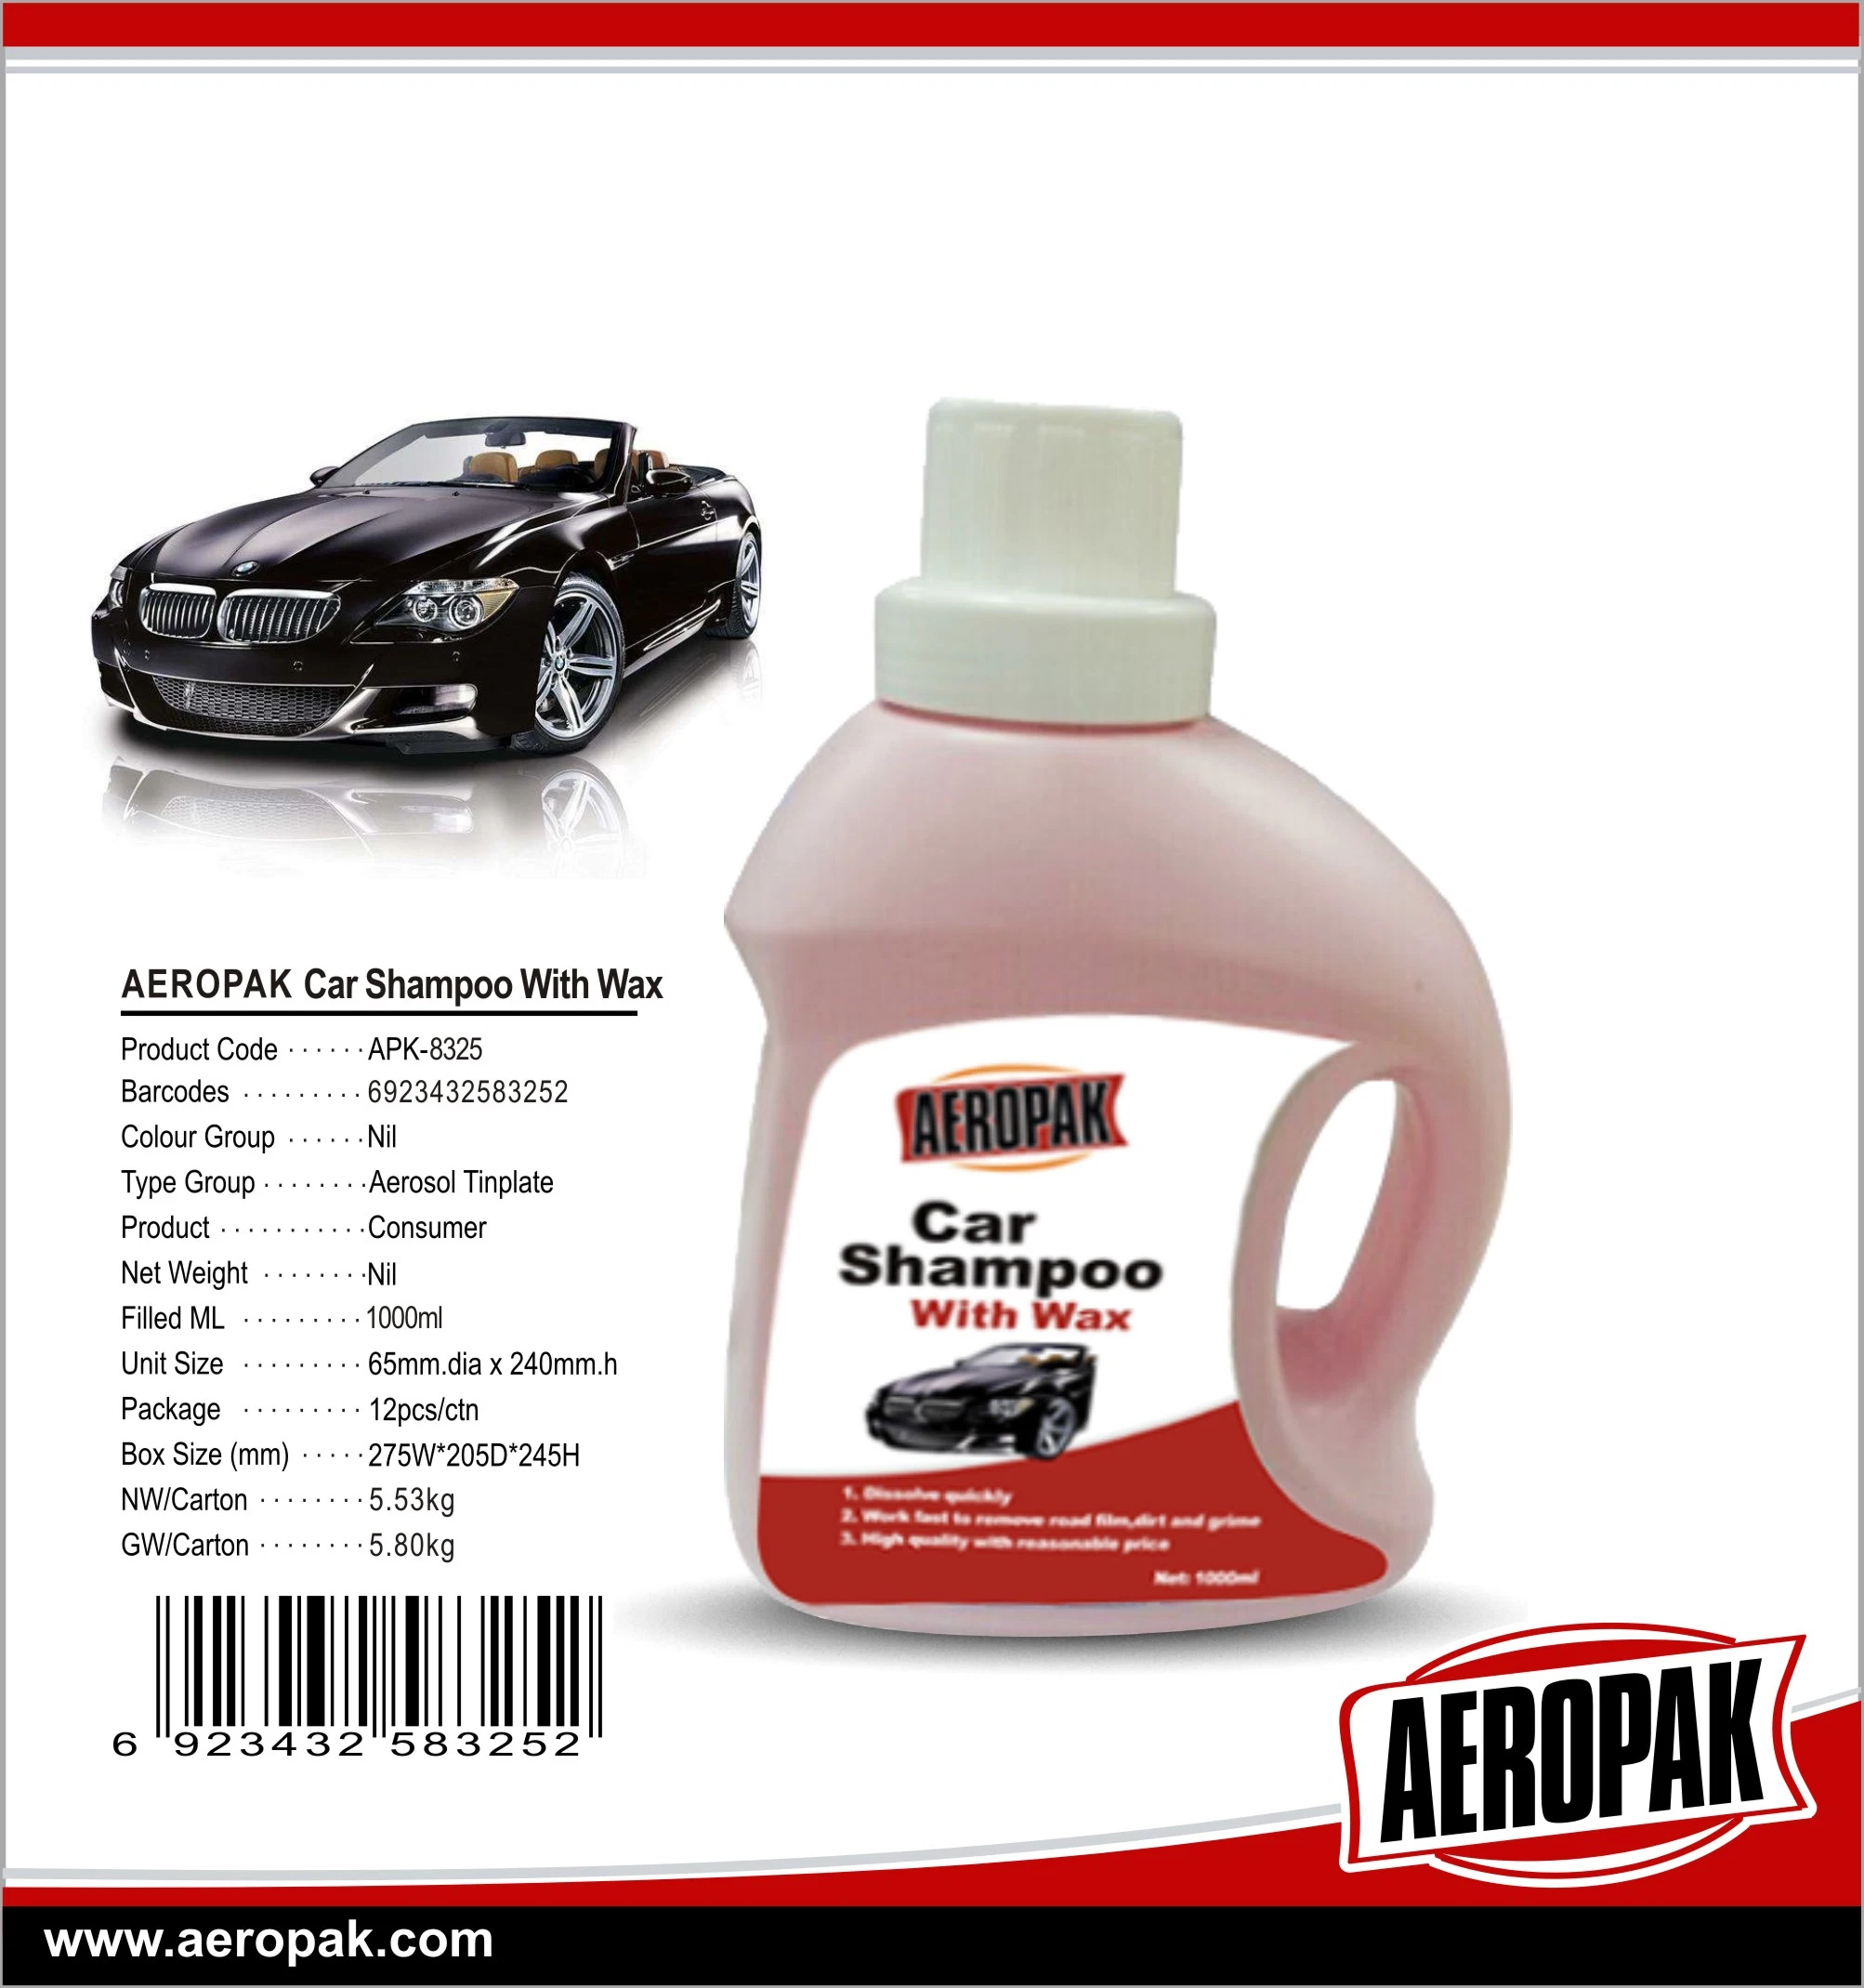 Aeropak Car Body Shampoo Cleaner with Wax for Car Washing